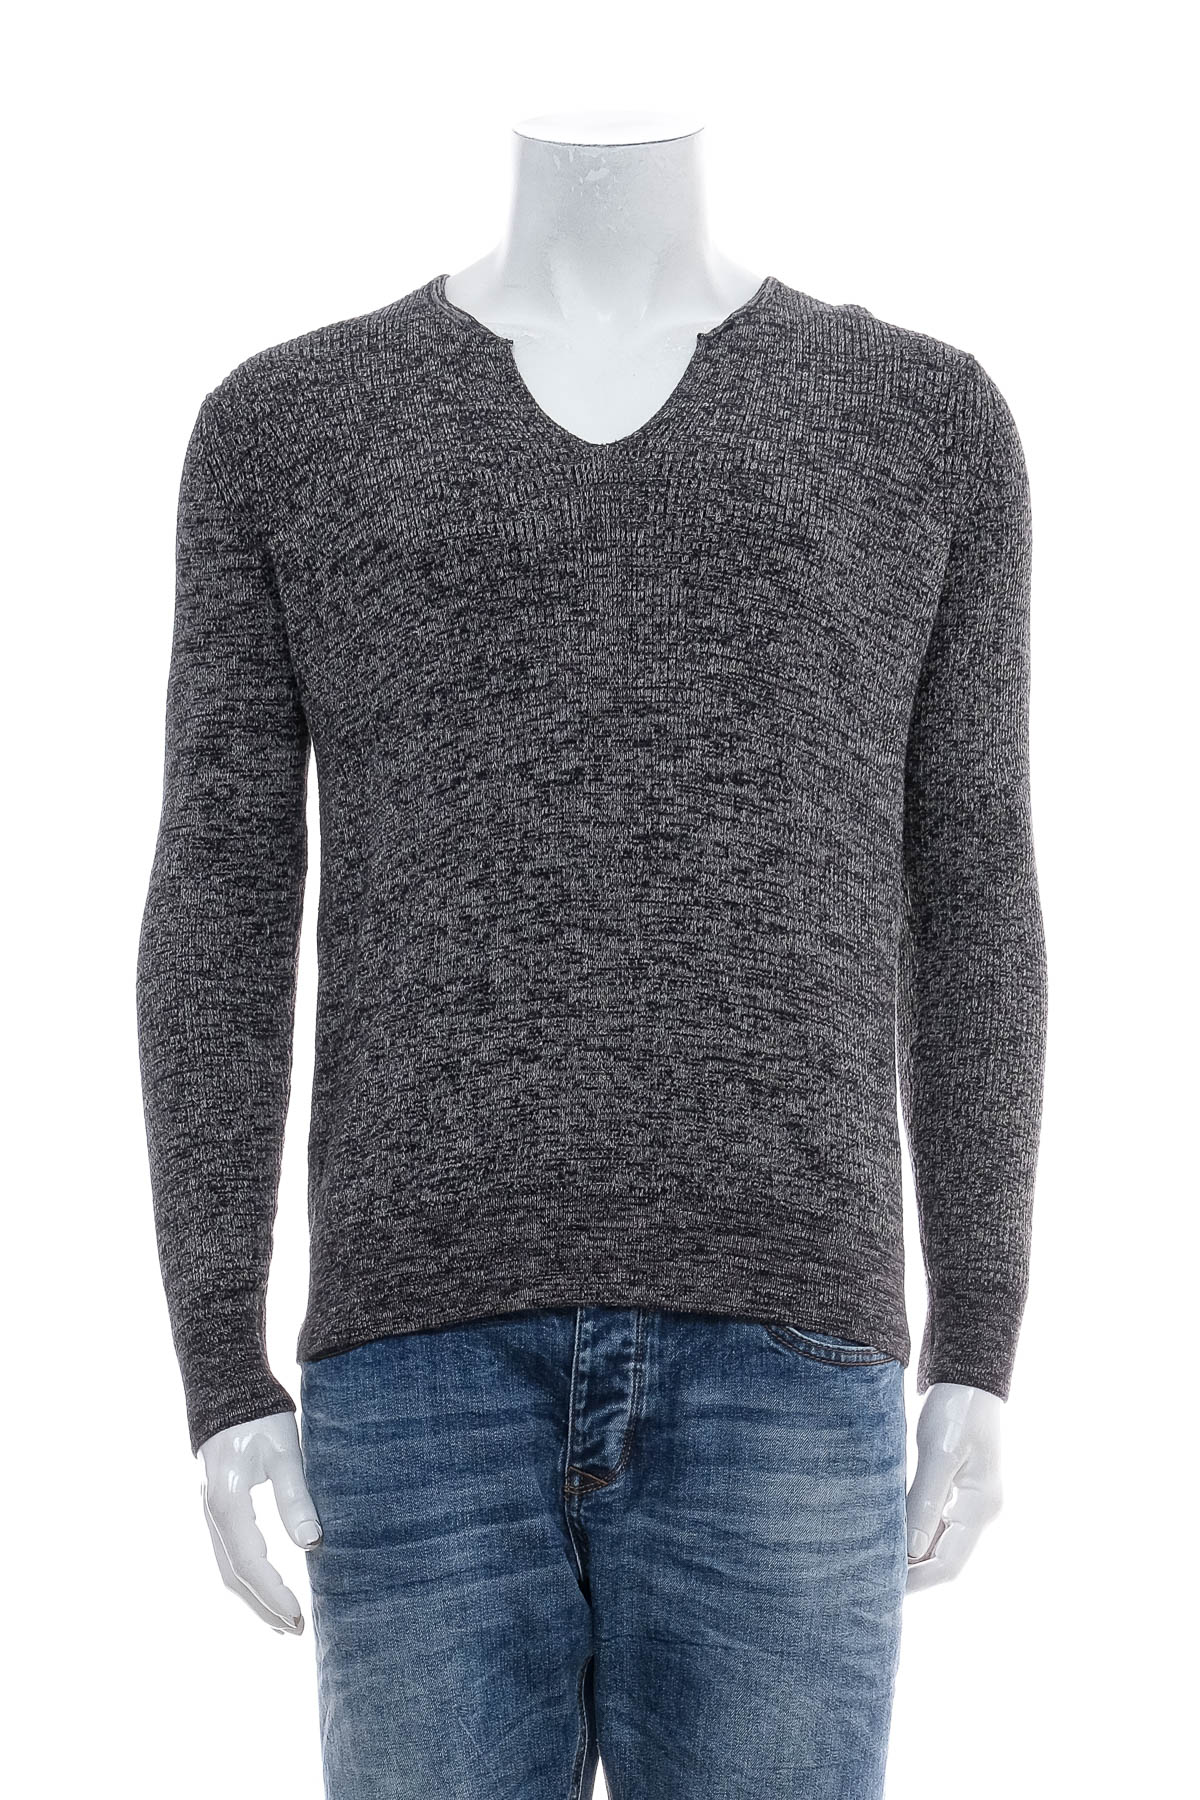 Men's sweater - DENVER HAYES - 0